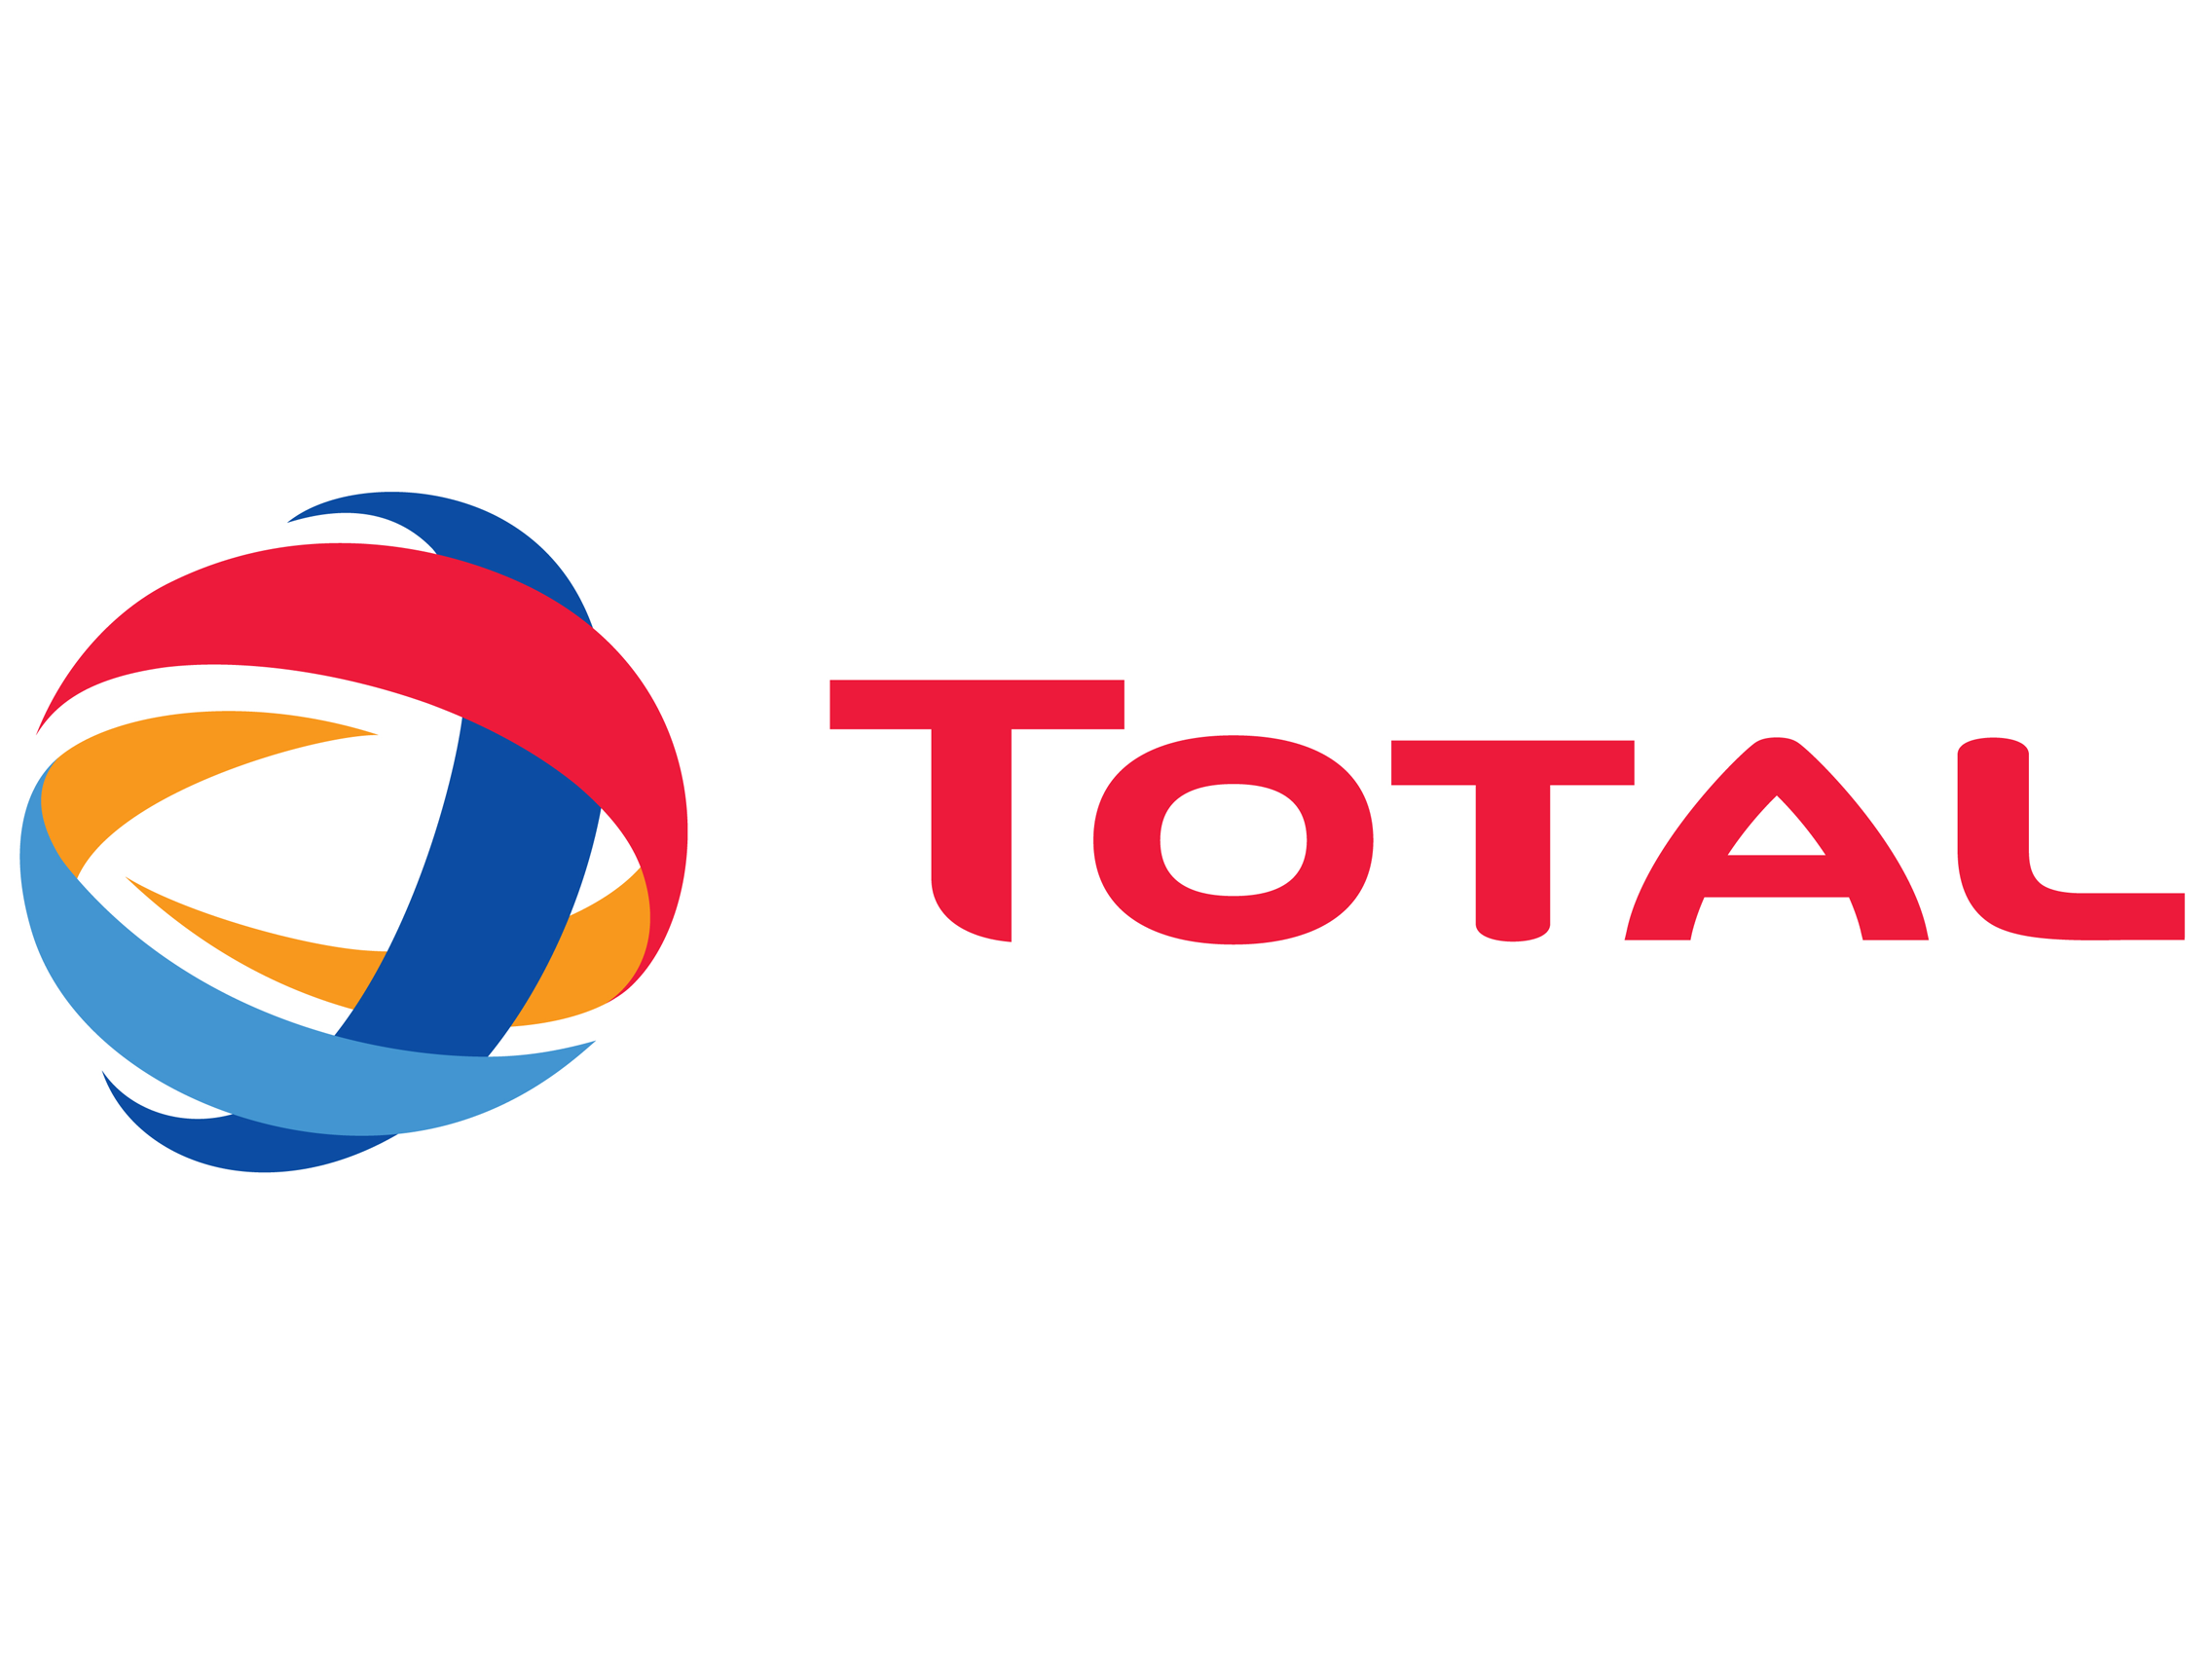 1 1Total logo